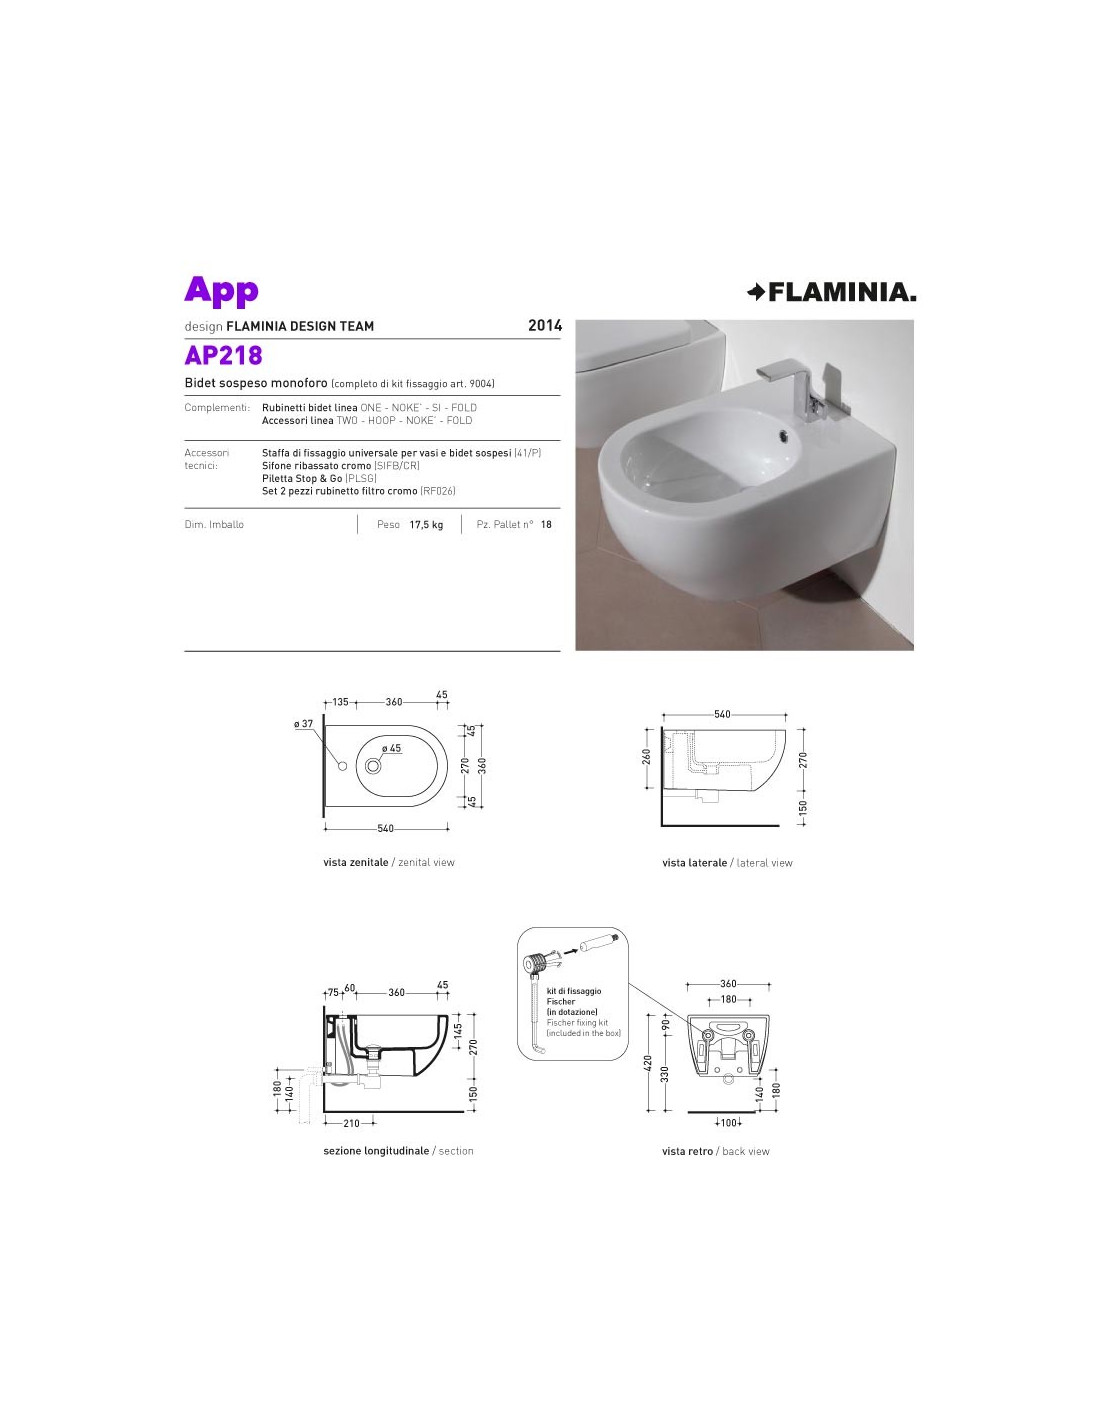 Lo scarico del wc e le evoluzioni tecniche del bagno - Flaminia Magazine